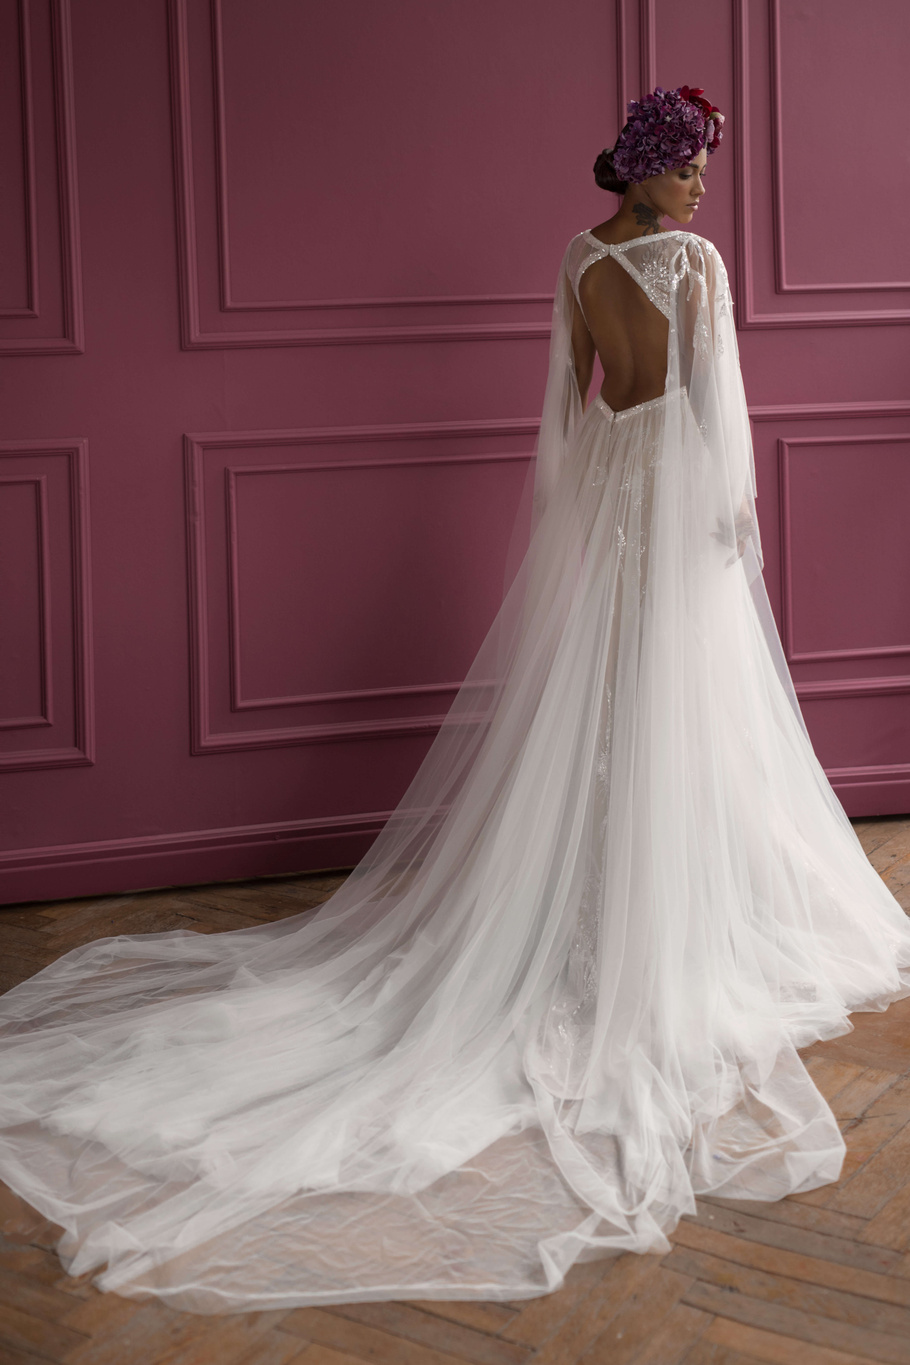 Купить свадебное платье «Матис» Бламмо Биамо из коллекции Нимфа 2020 года в Санкт-Петербурге